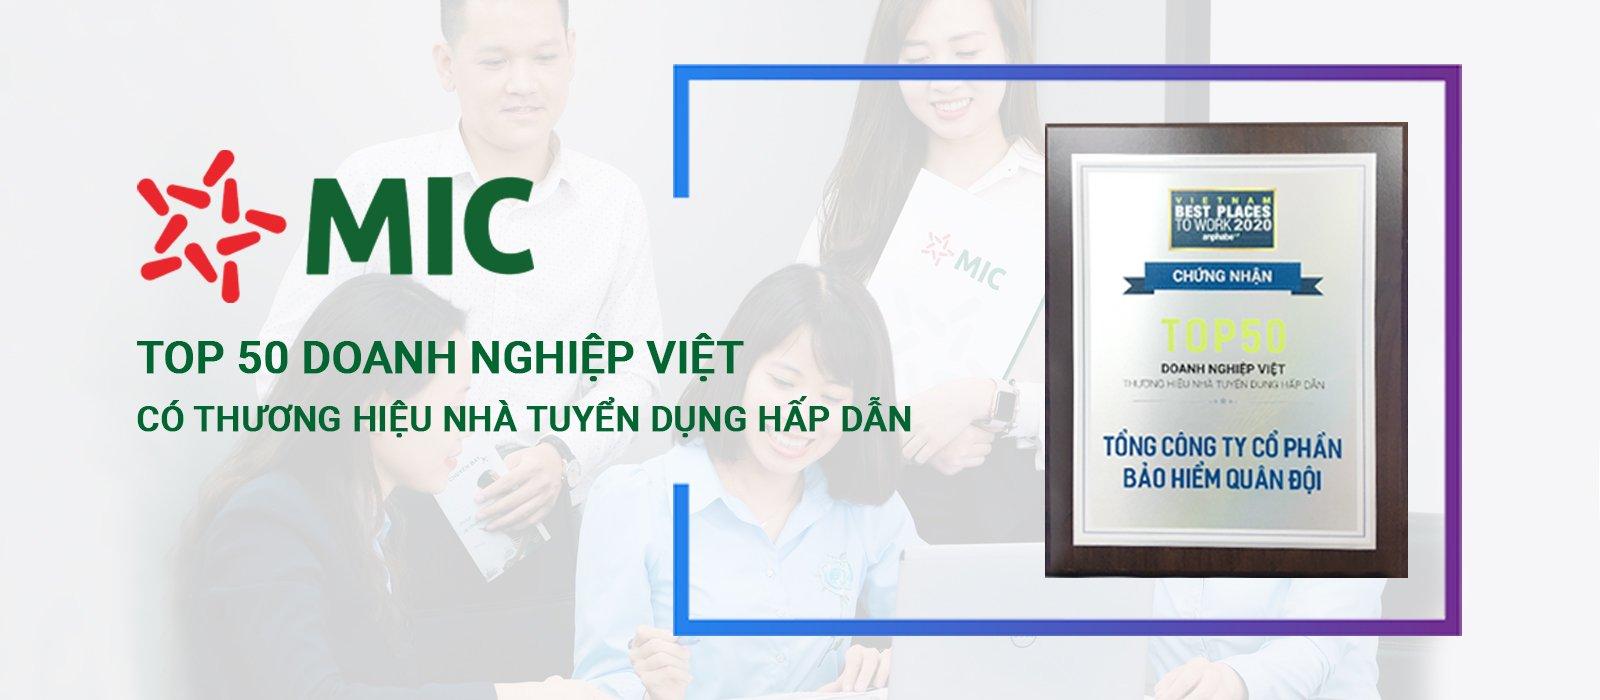 Latest Tổng Công Ty Cổ Phần Bảo Hiểm Quân Đội employment/hiring with high salary & attractive benefits